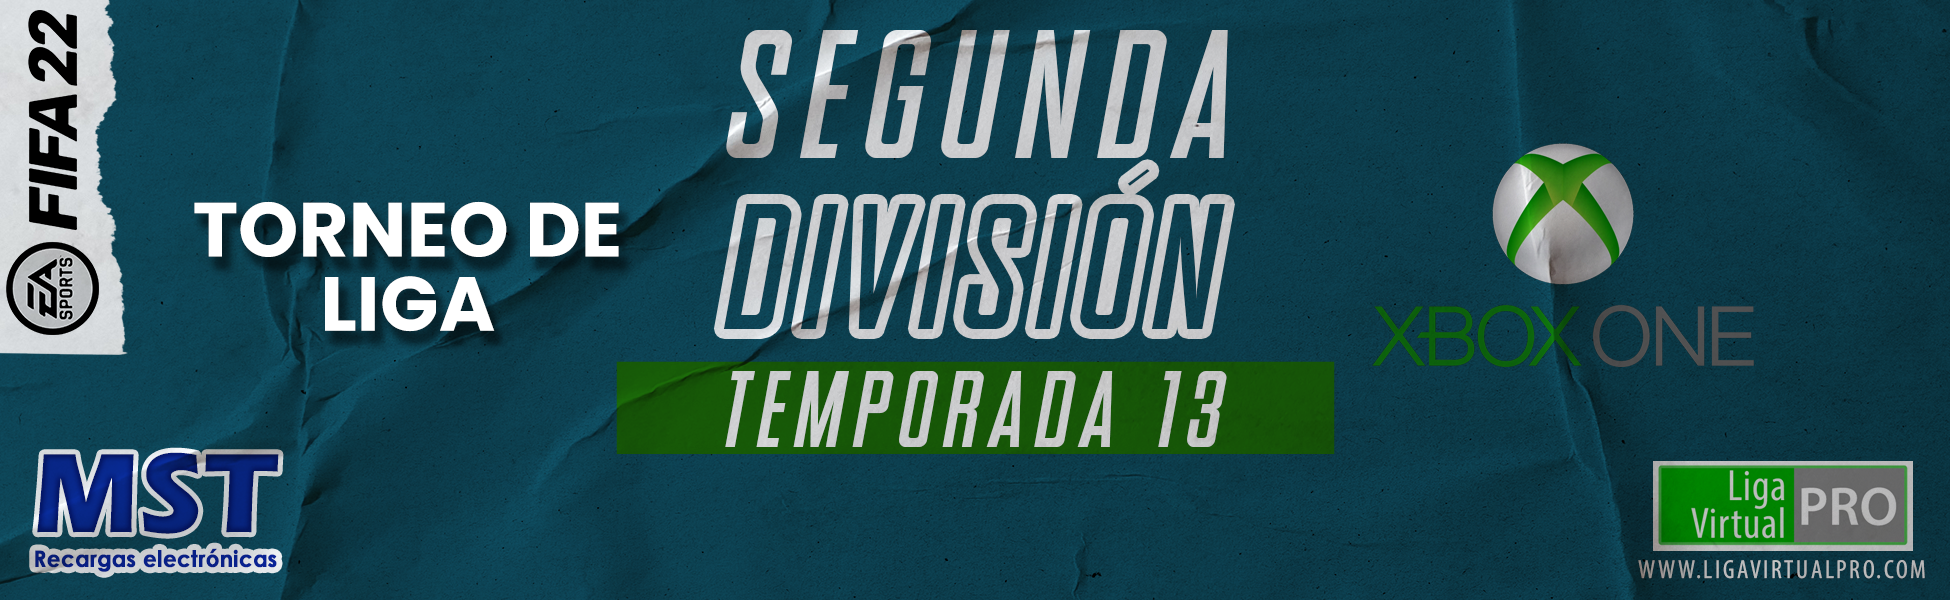 Logo-SEGUNDA DIVISIÓN XBOX ONE - TEMPORADA 13 